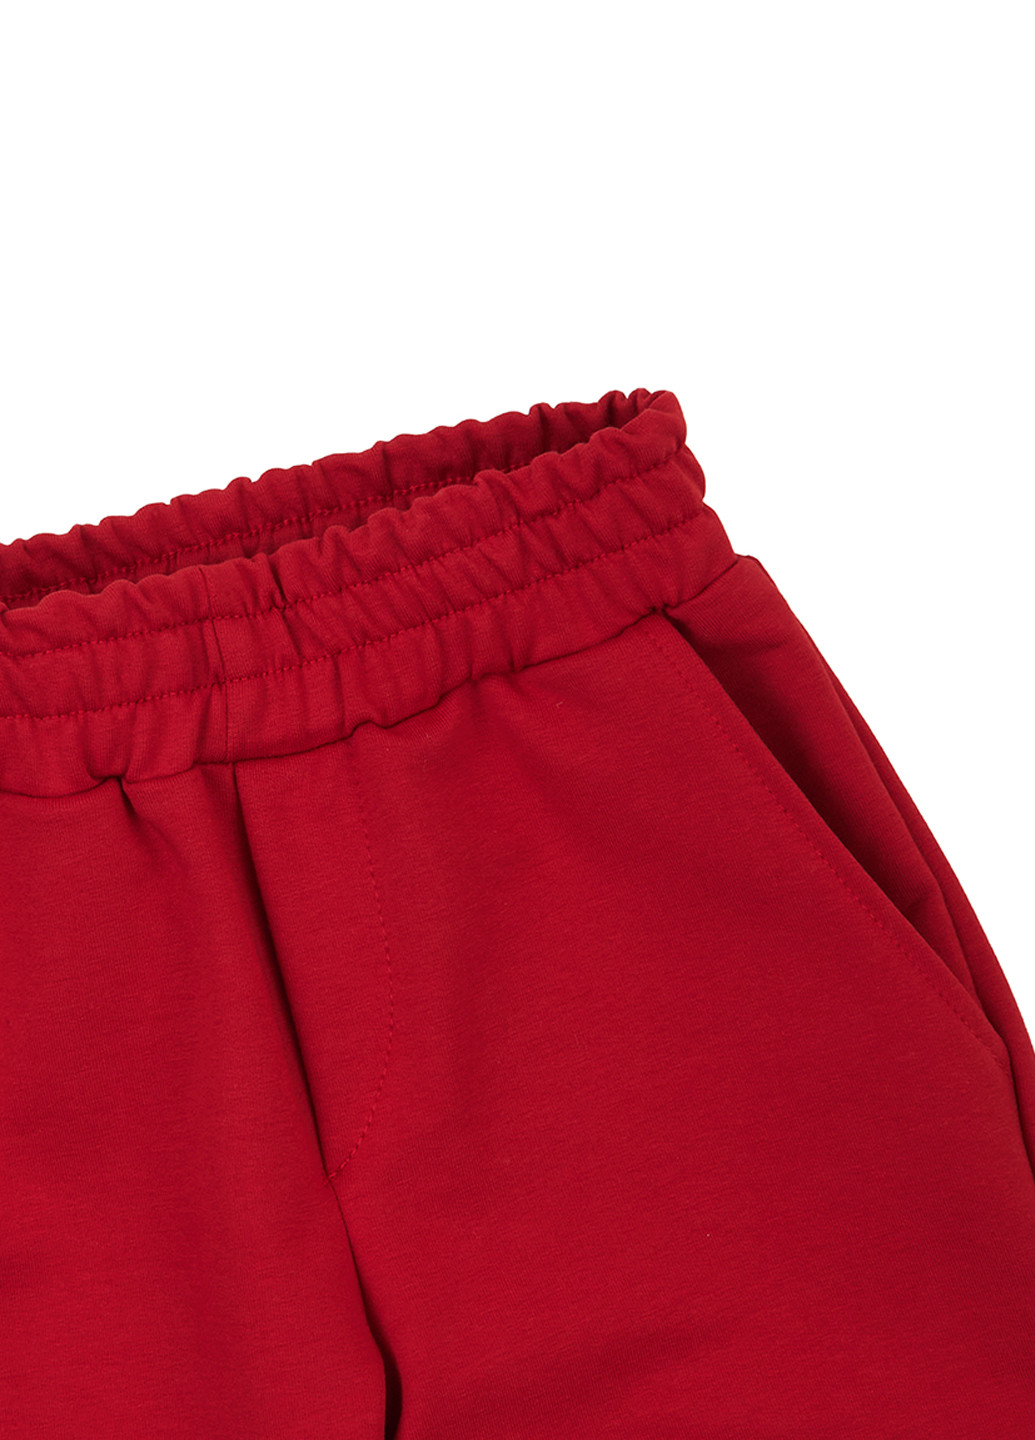 Красные спортивные демисезонные джоггеры брюки Garnamama